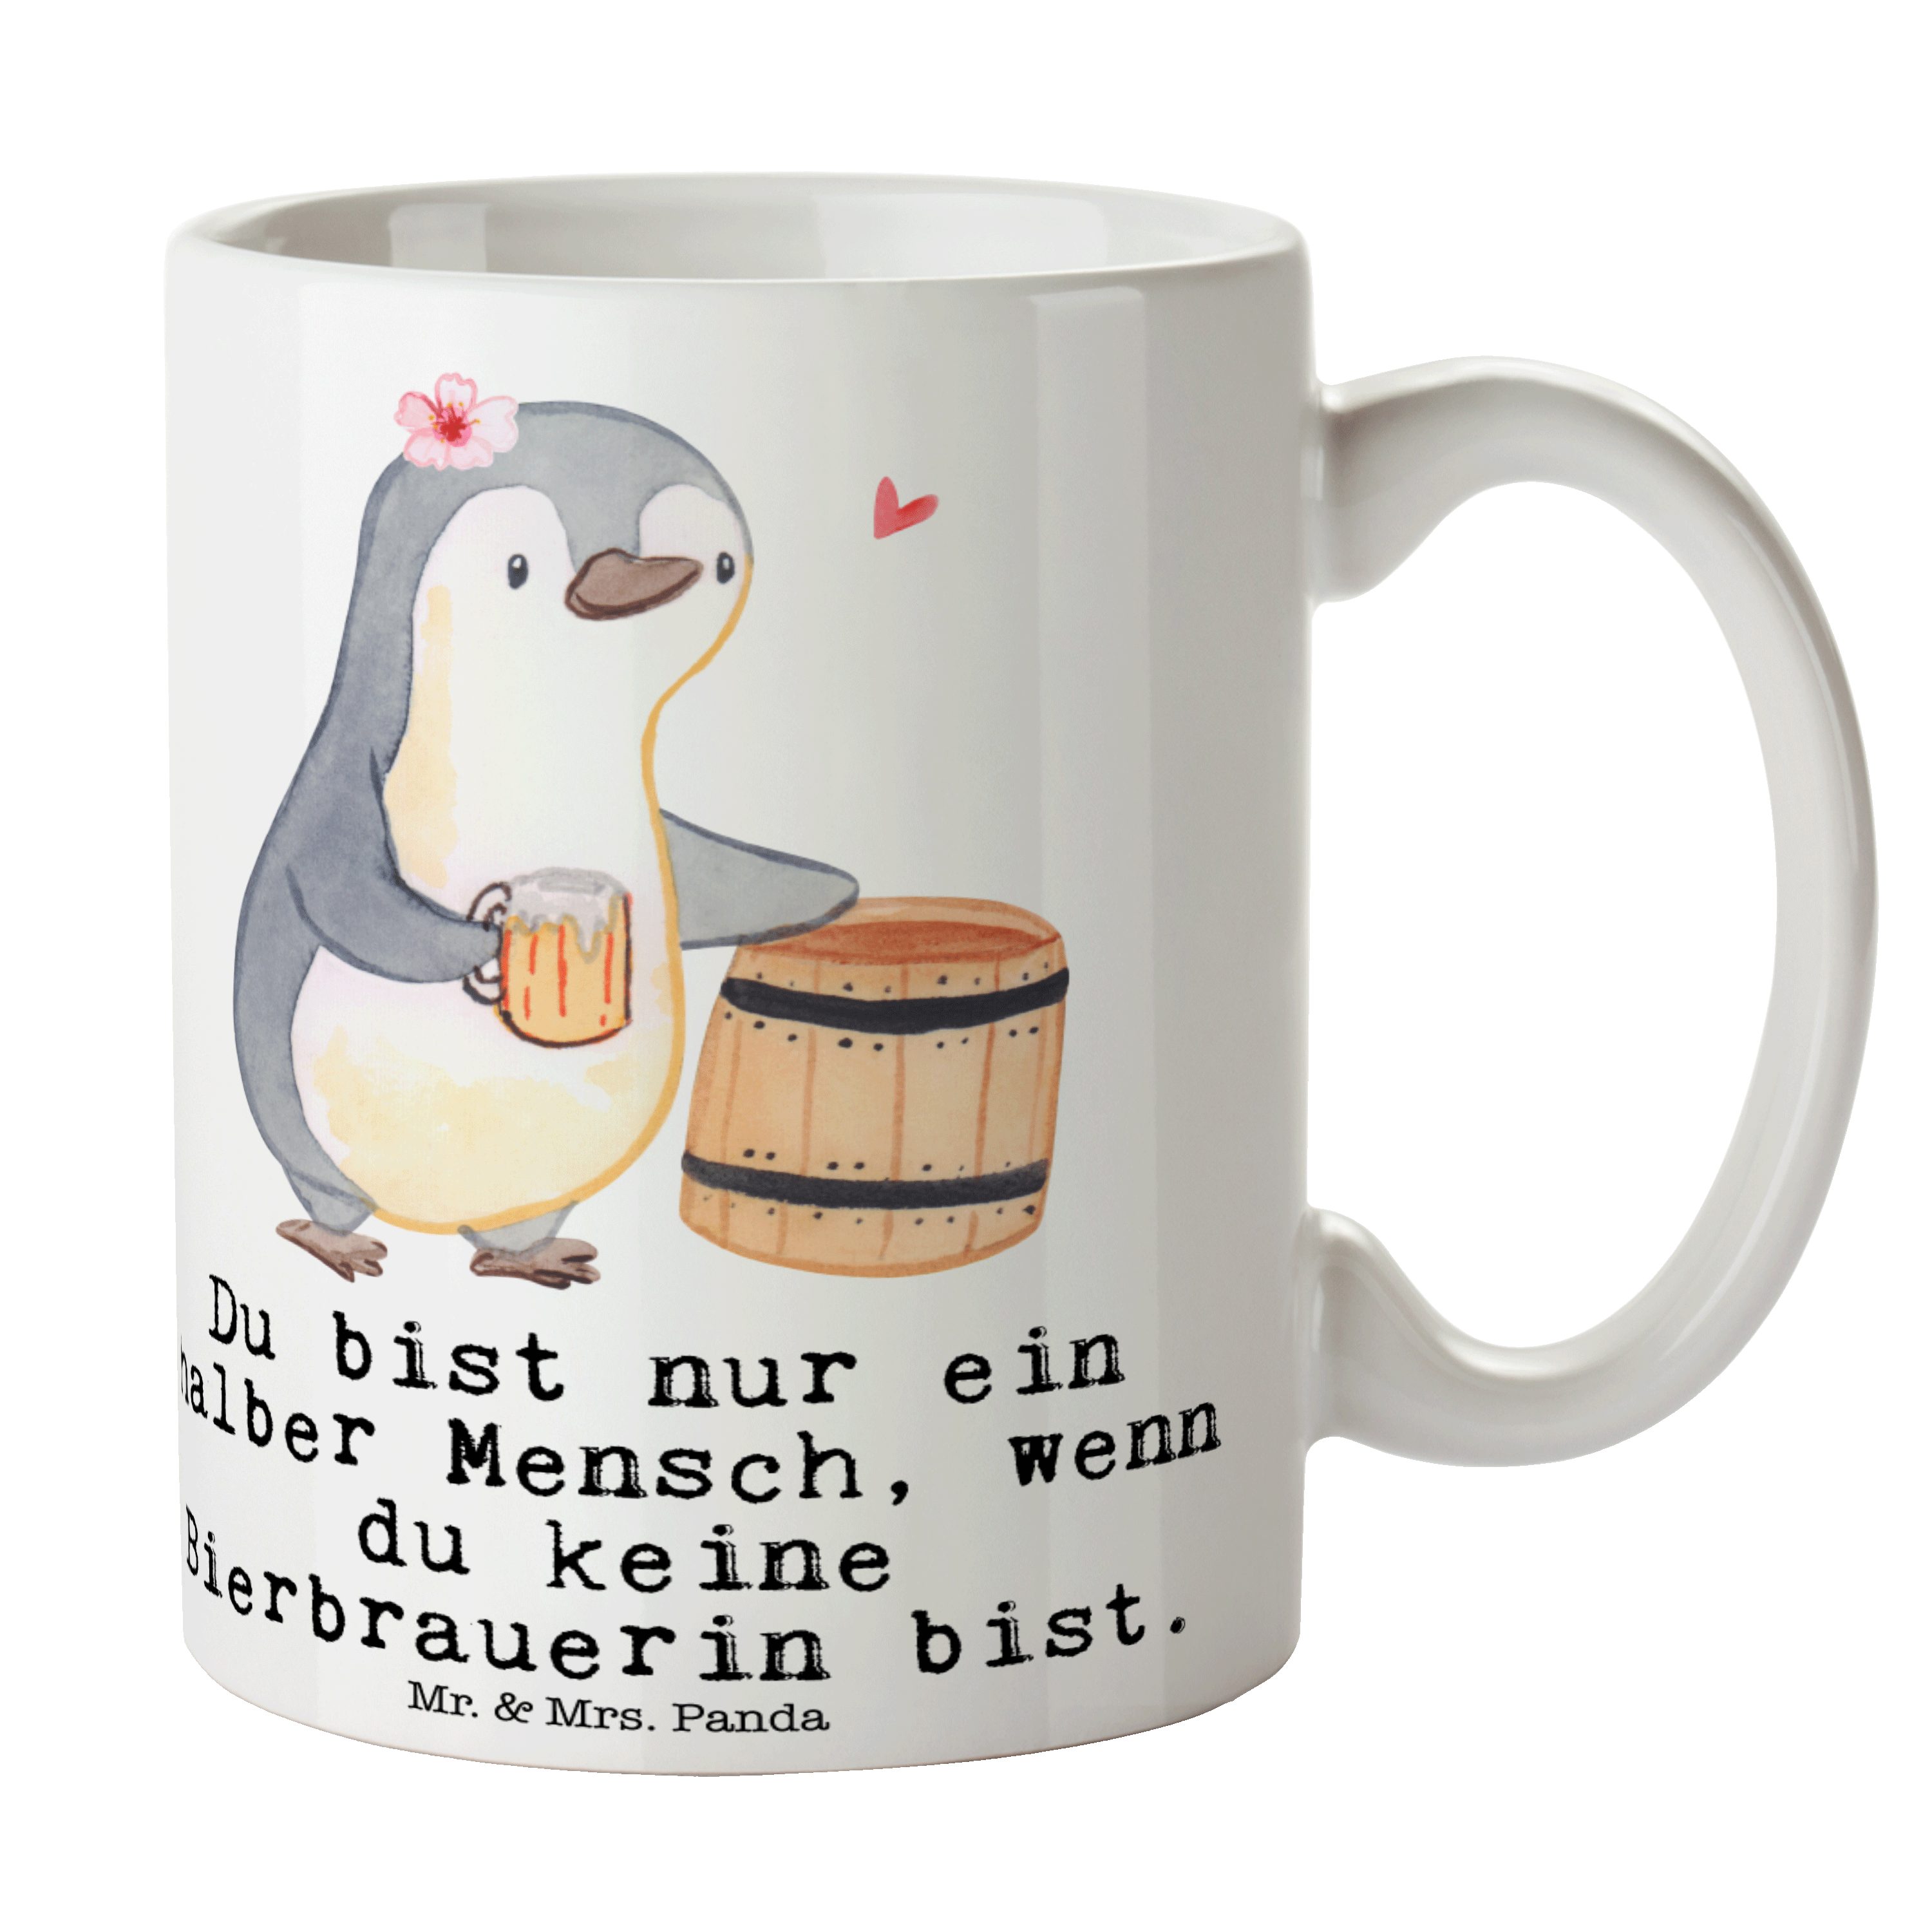 Mr. & Mrs. Panda Tasse Bierbrauerin mit Herz - Weiß - Geschenk, Selbstbrauen, Keramiktasse, Keramik